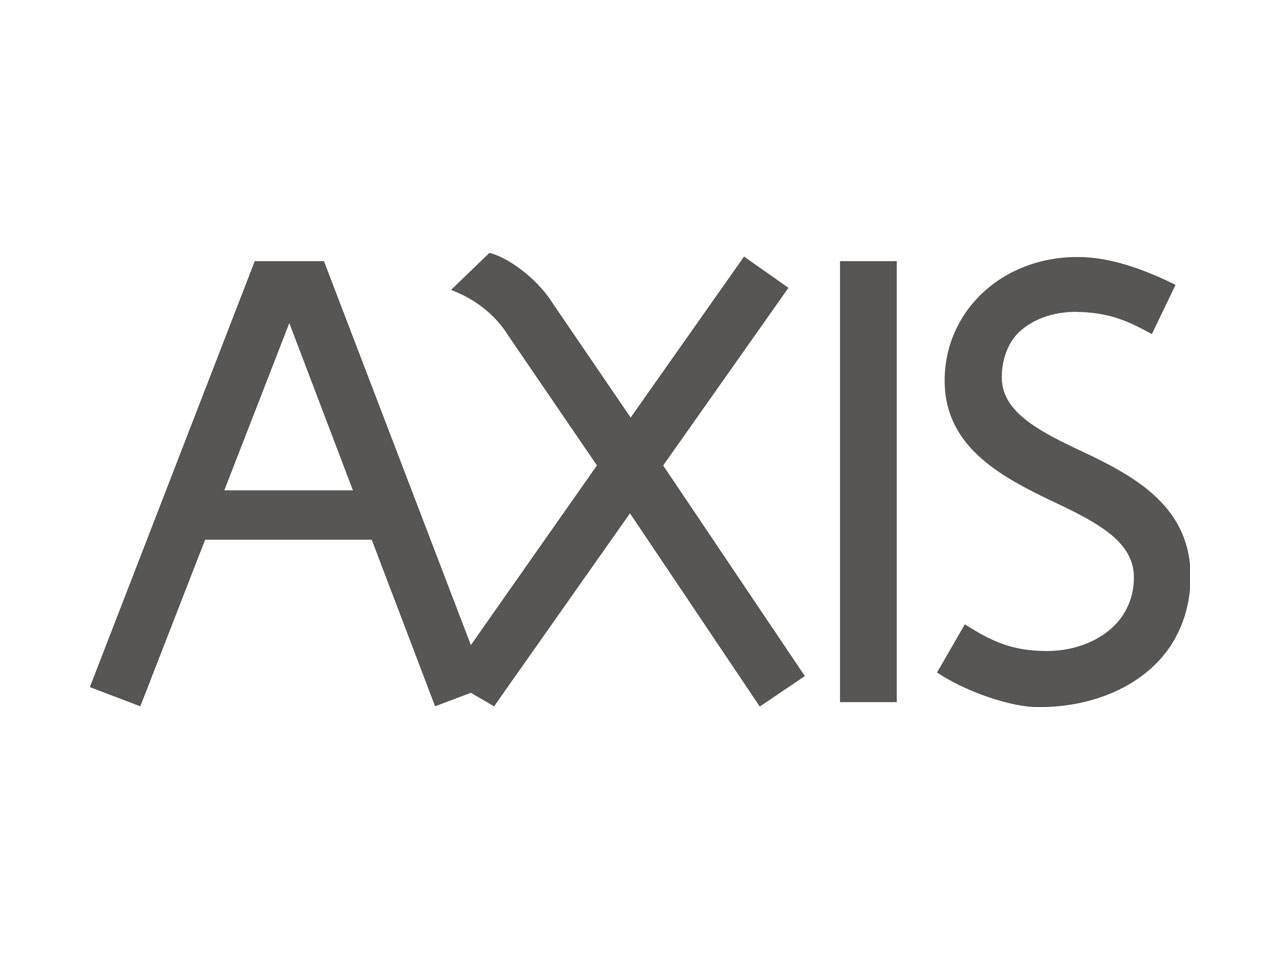 東京・六本木のデザイン発信拠点『AXIS』をベースに、生活と社会におけるデザインの可能性を追求し続けてきたデザイン開発企業。